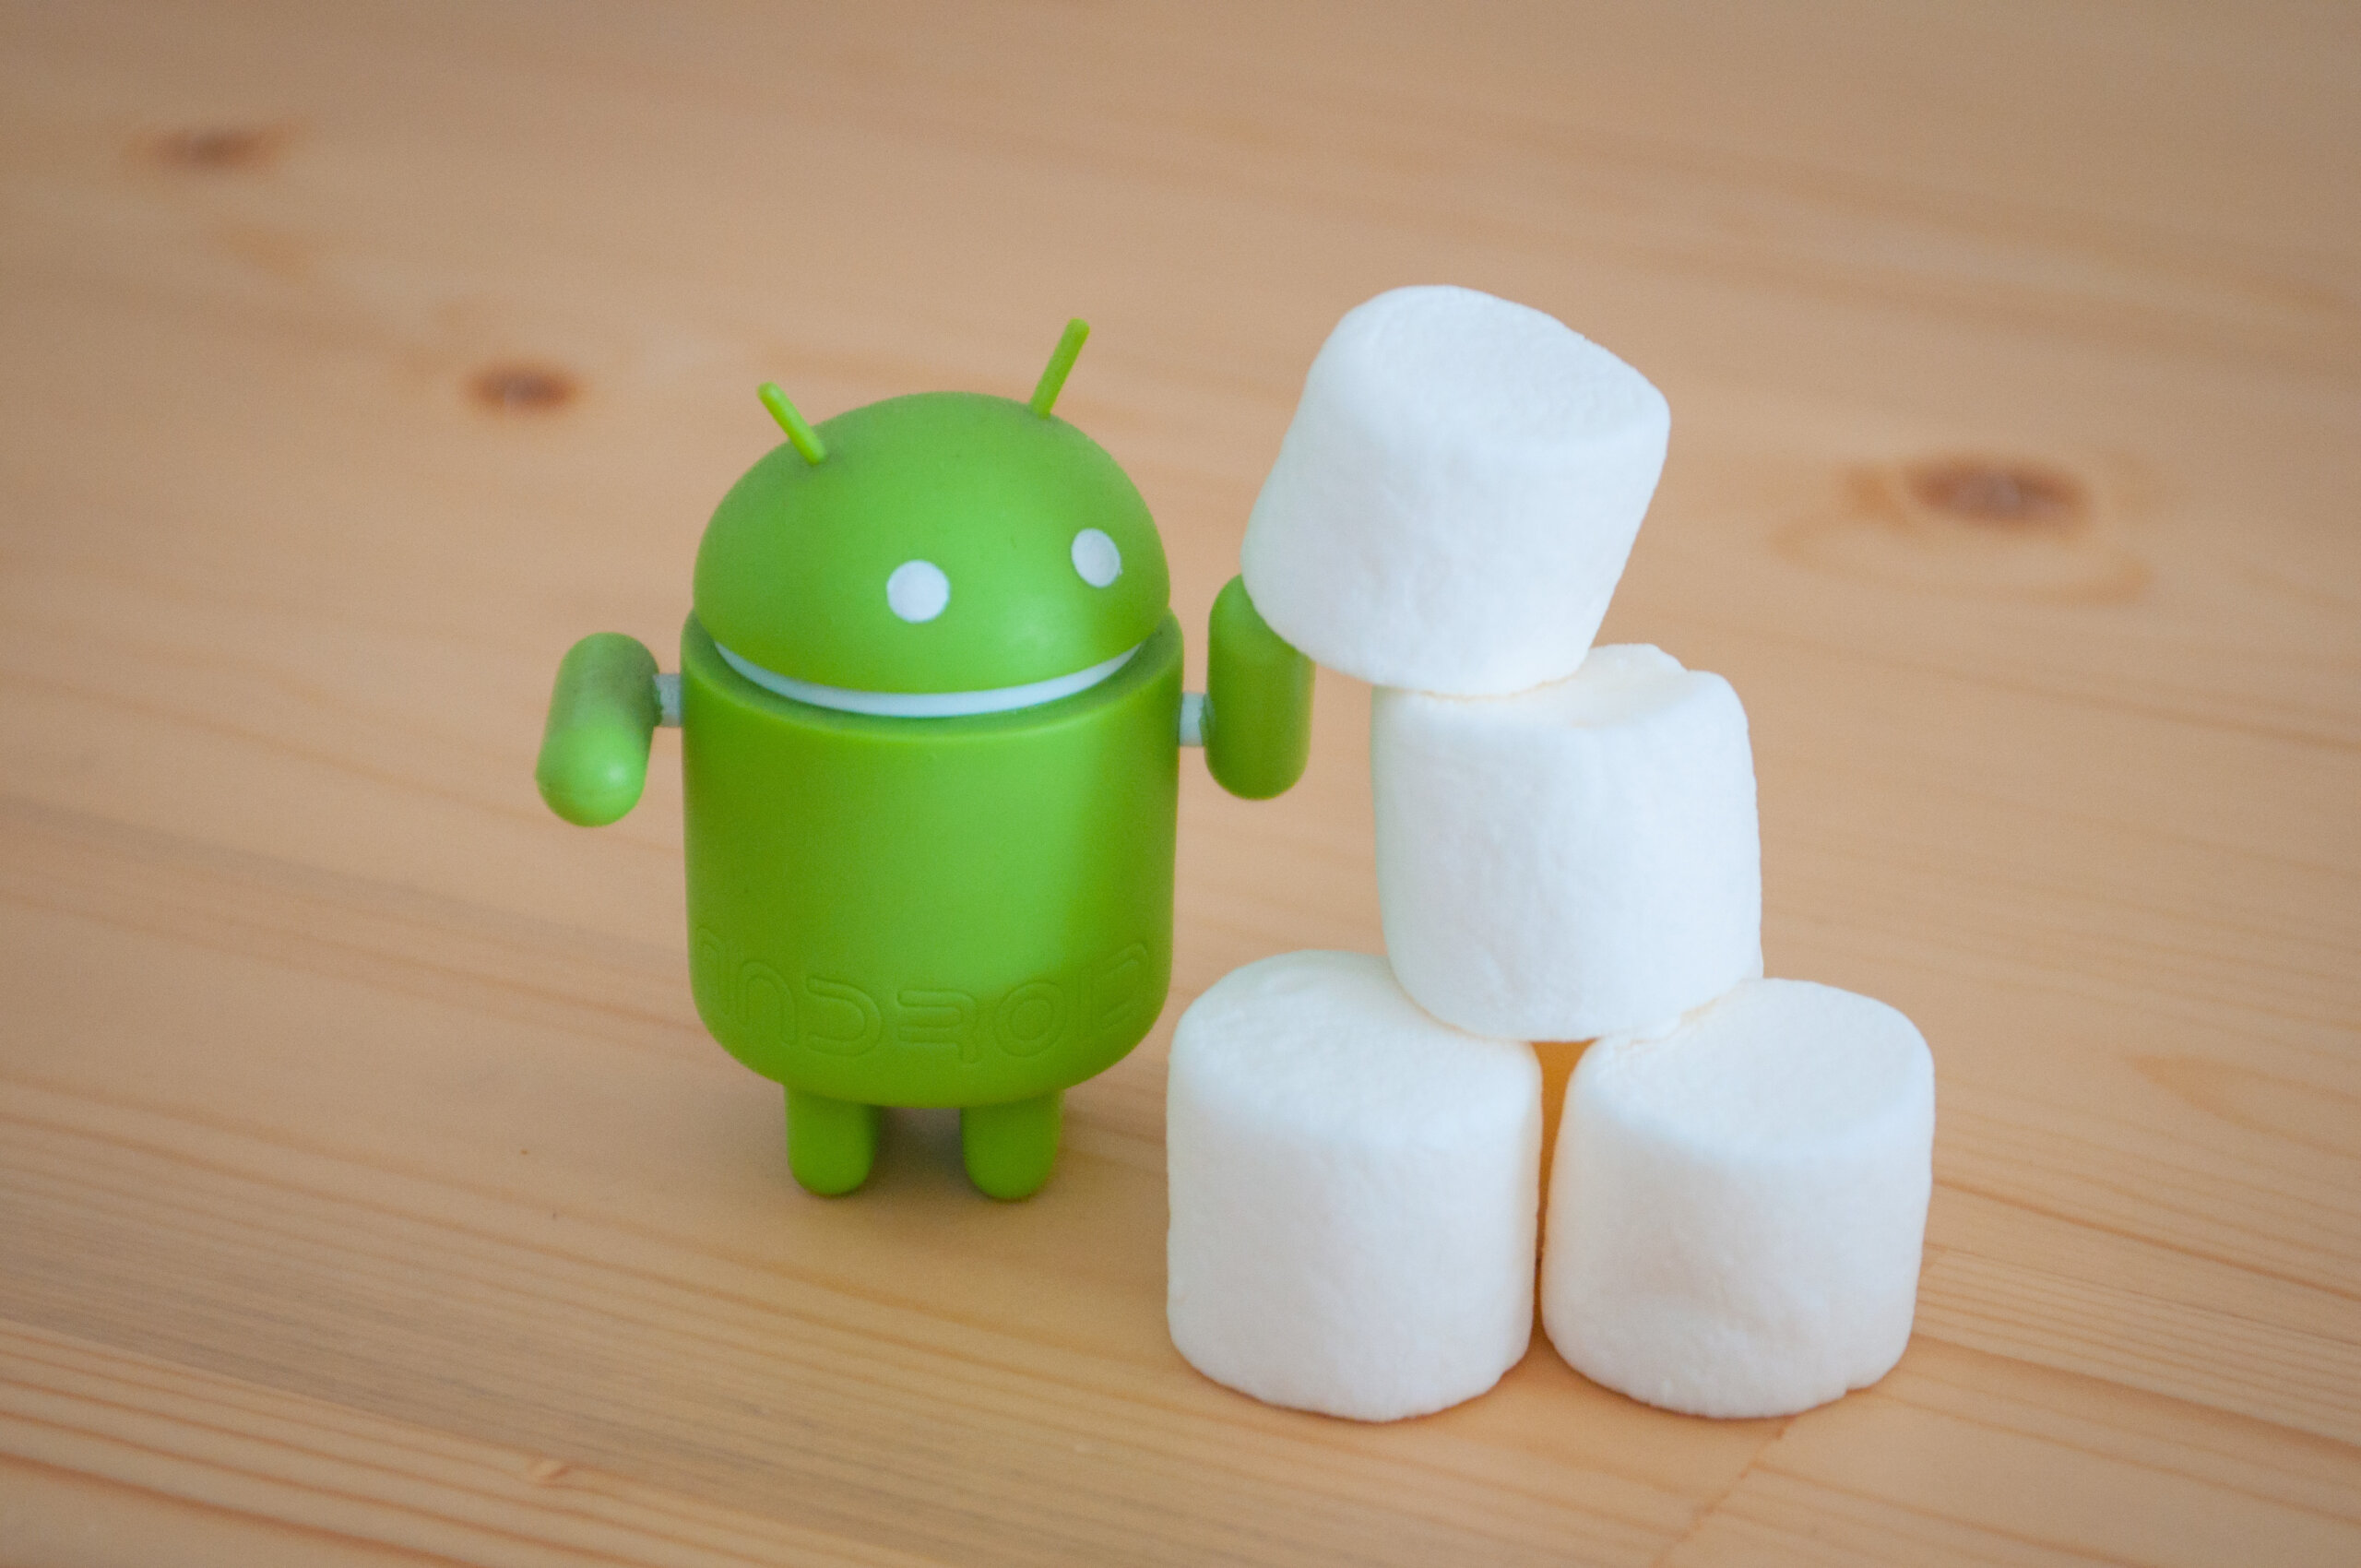 Android 6.0 Marshmallow กินส่วนแบ่ง 10 % จากสมาร์ทโฟน Android ทั้งหมดแล้ว